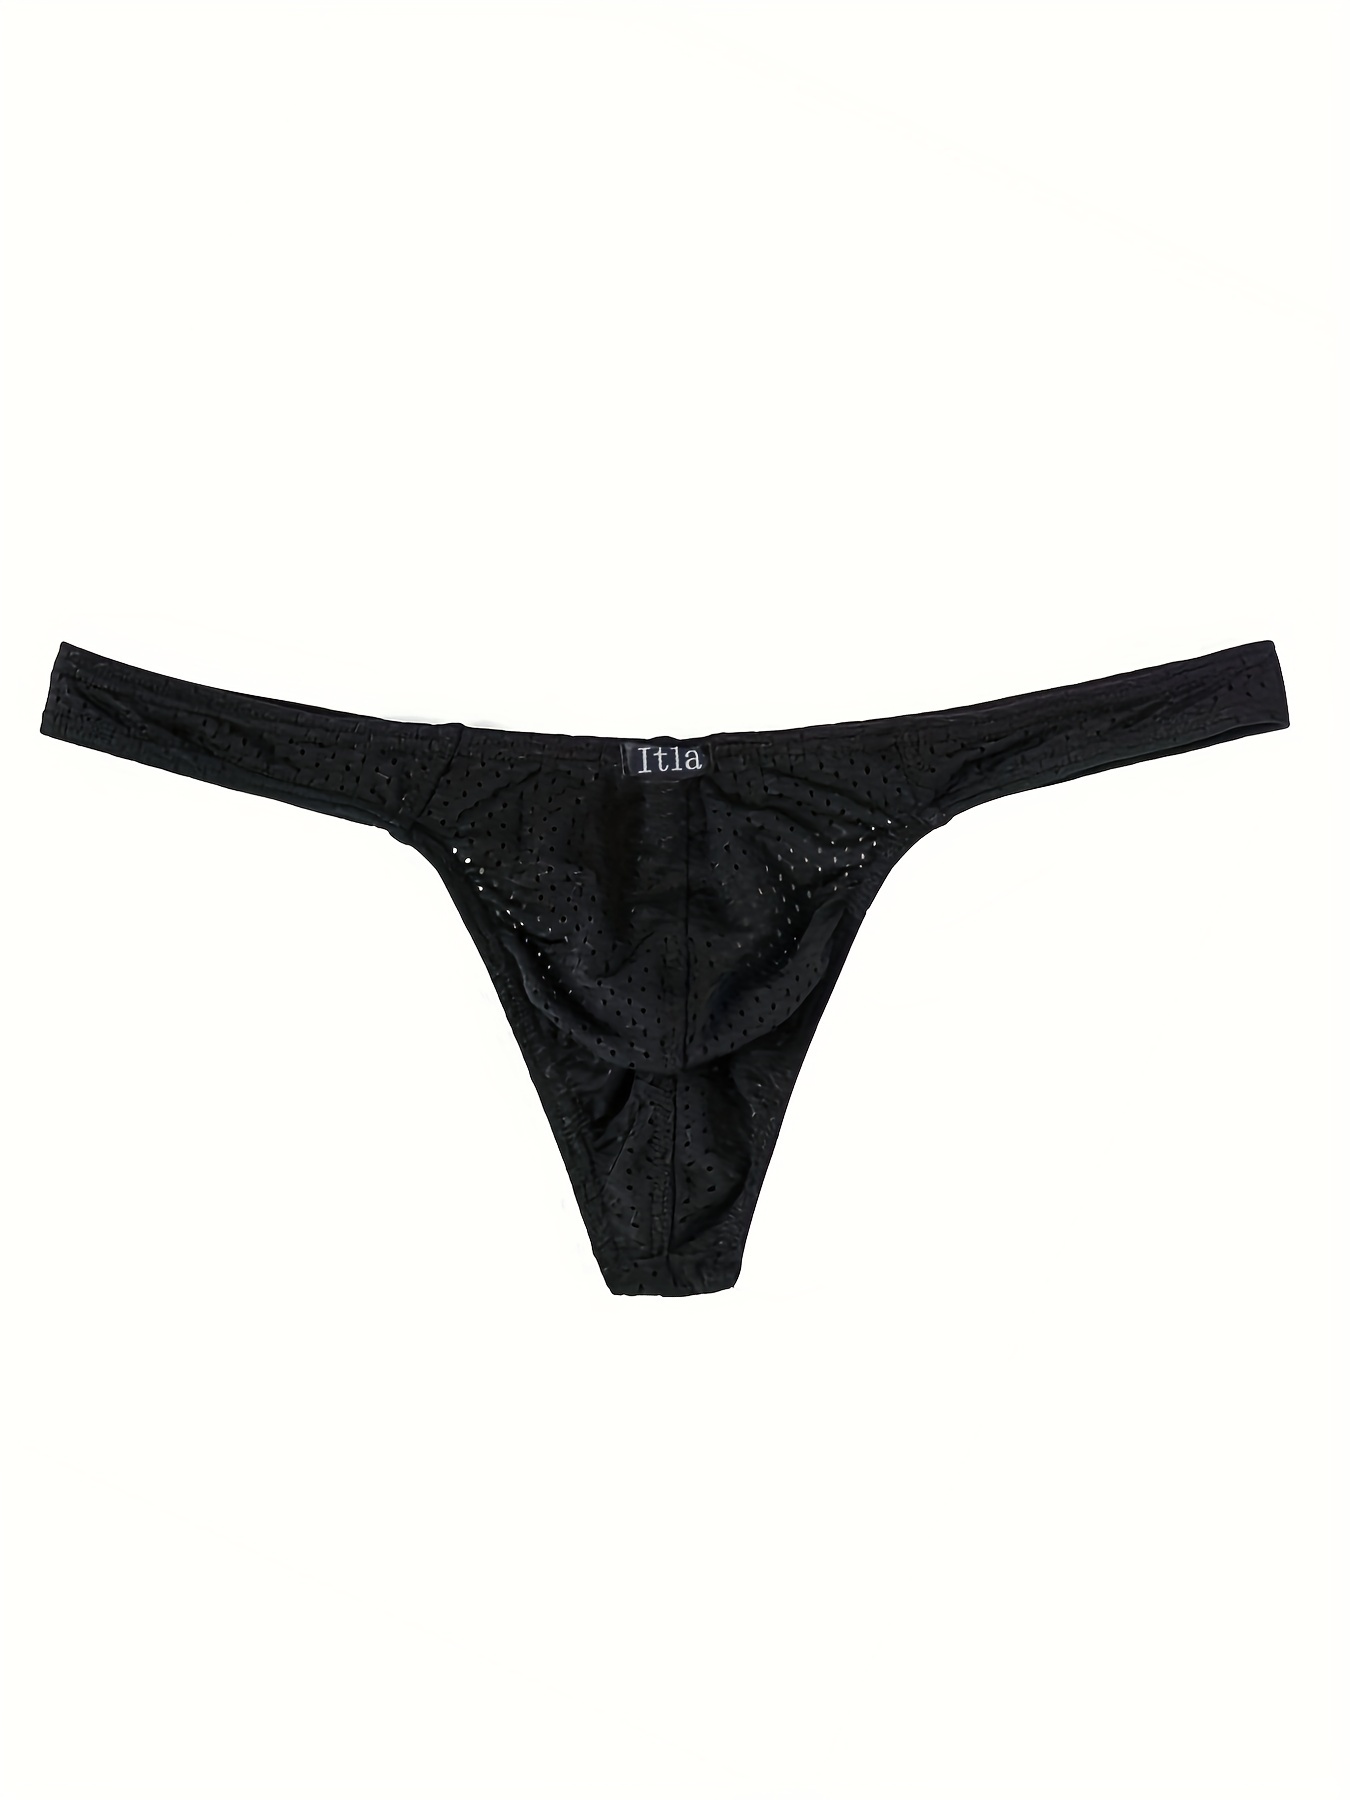 Men's Mesh See-through Pouch G-string Briefs Underwear T-back